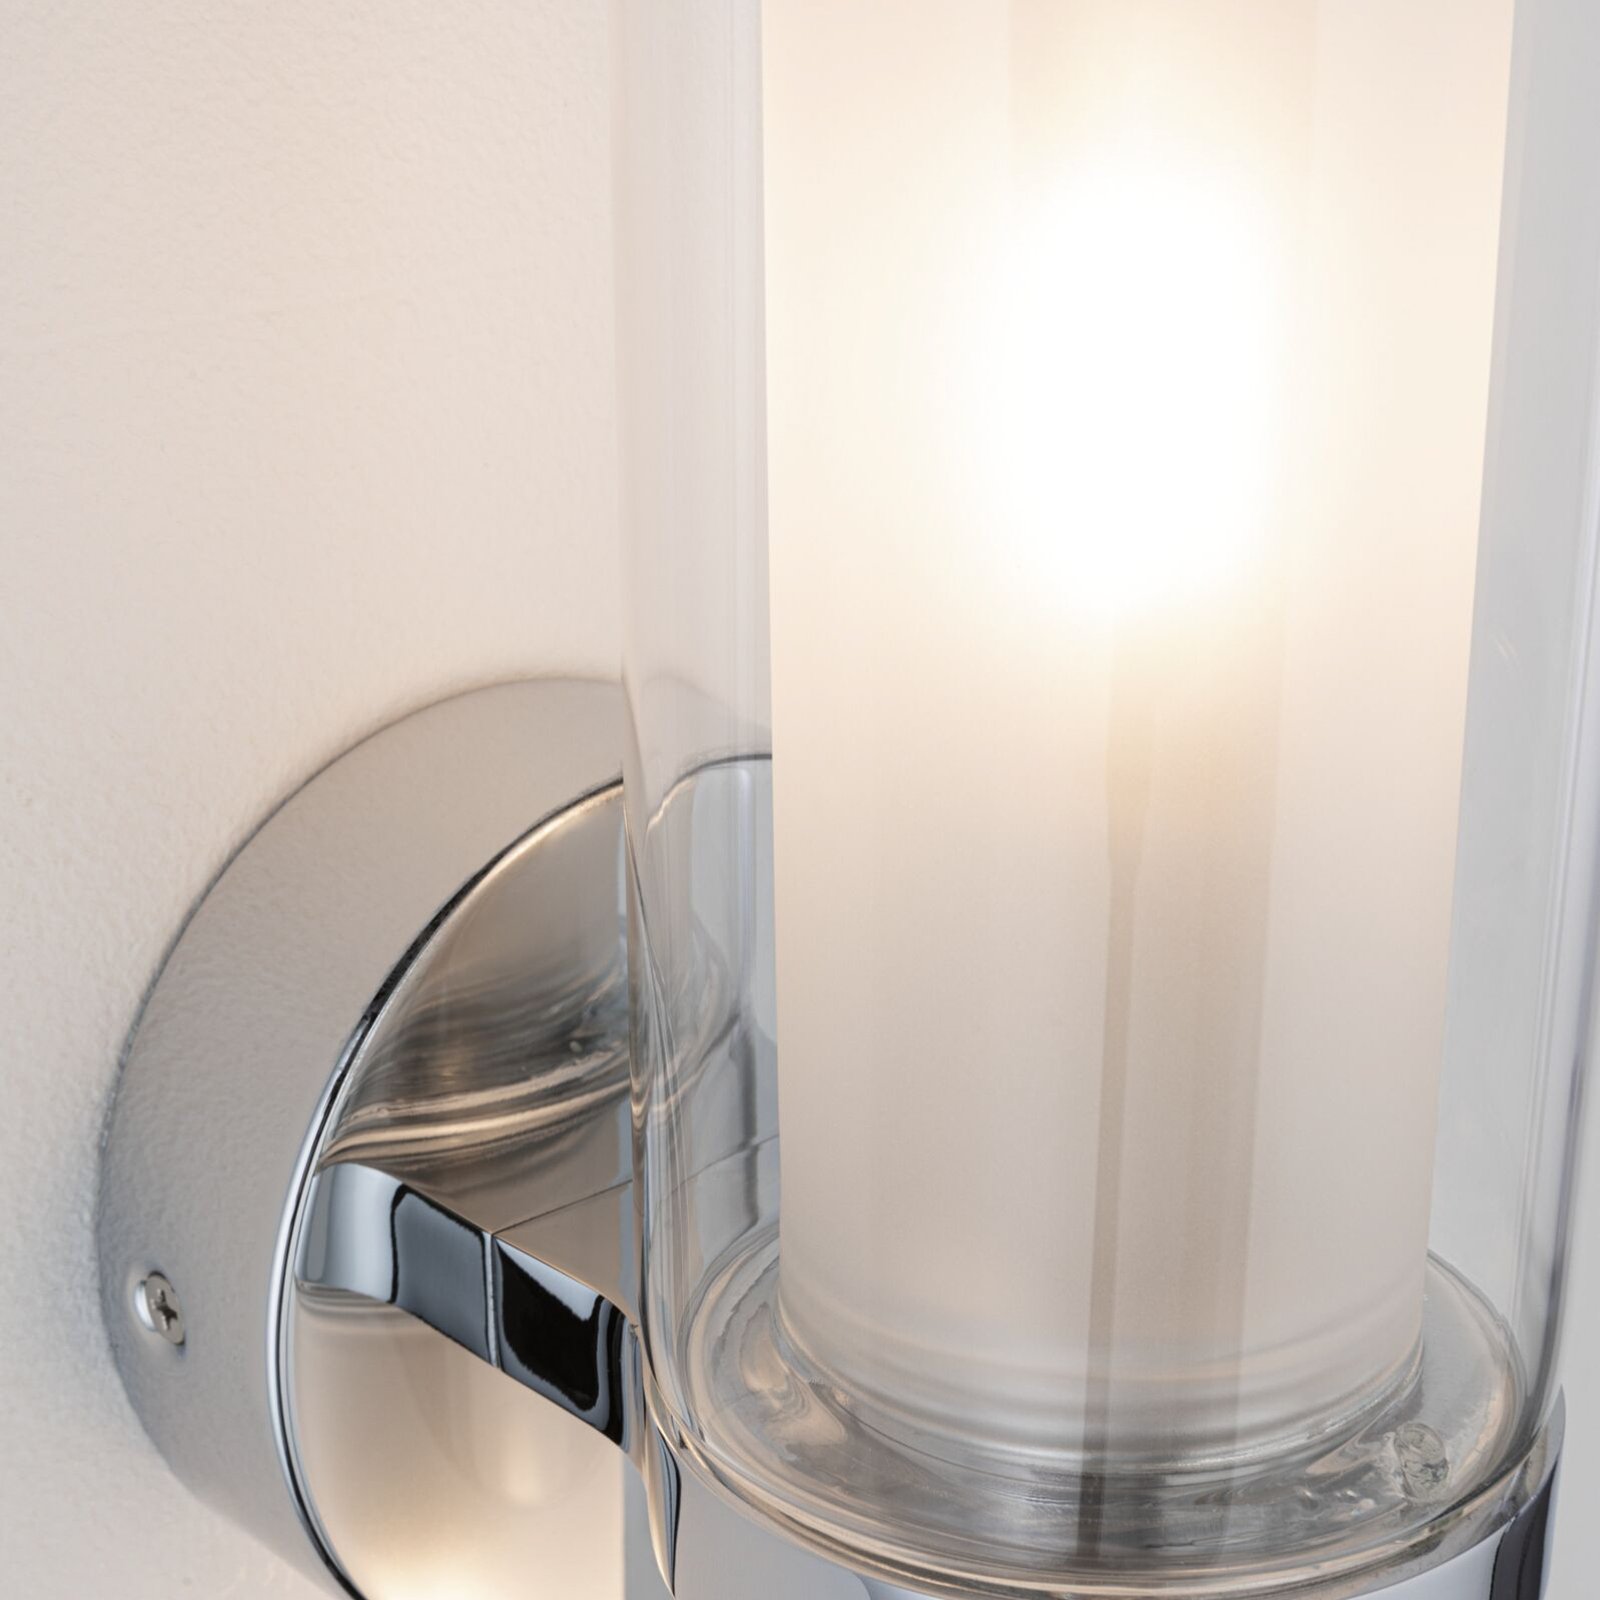 Paulmann Luena wandlamp IP44 chroom E14 1-lamp